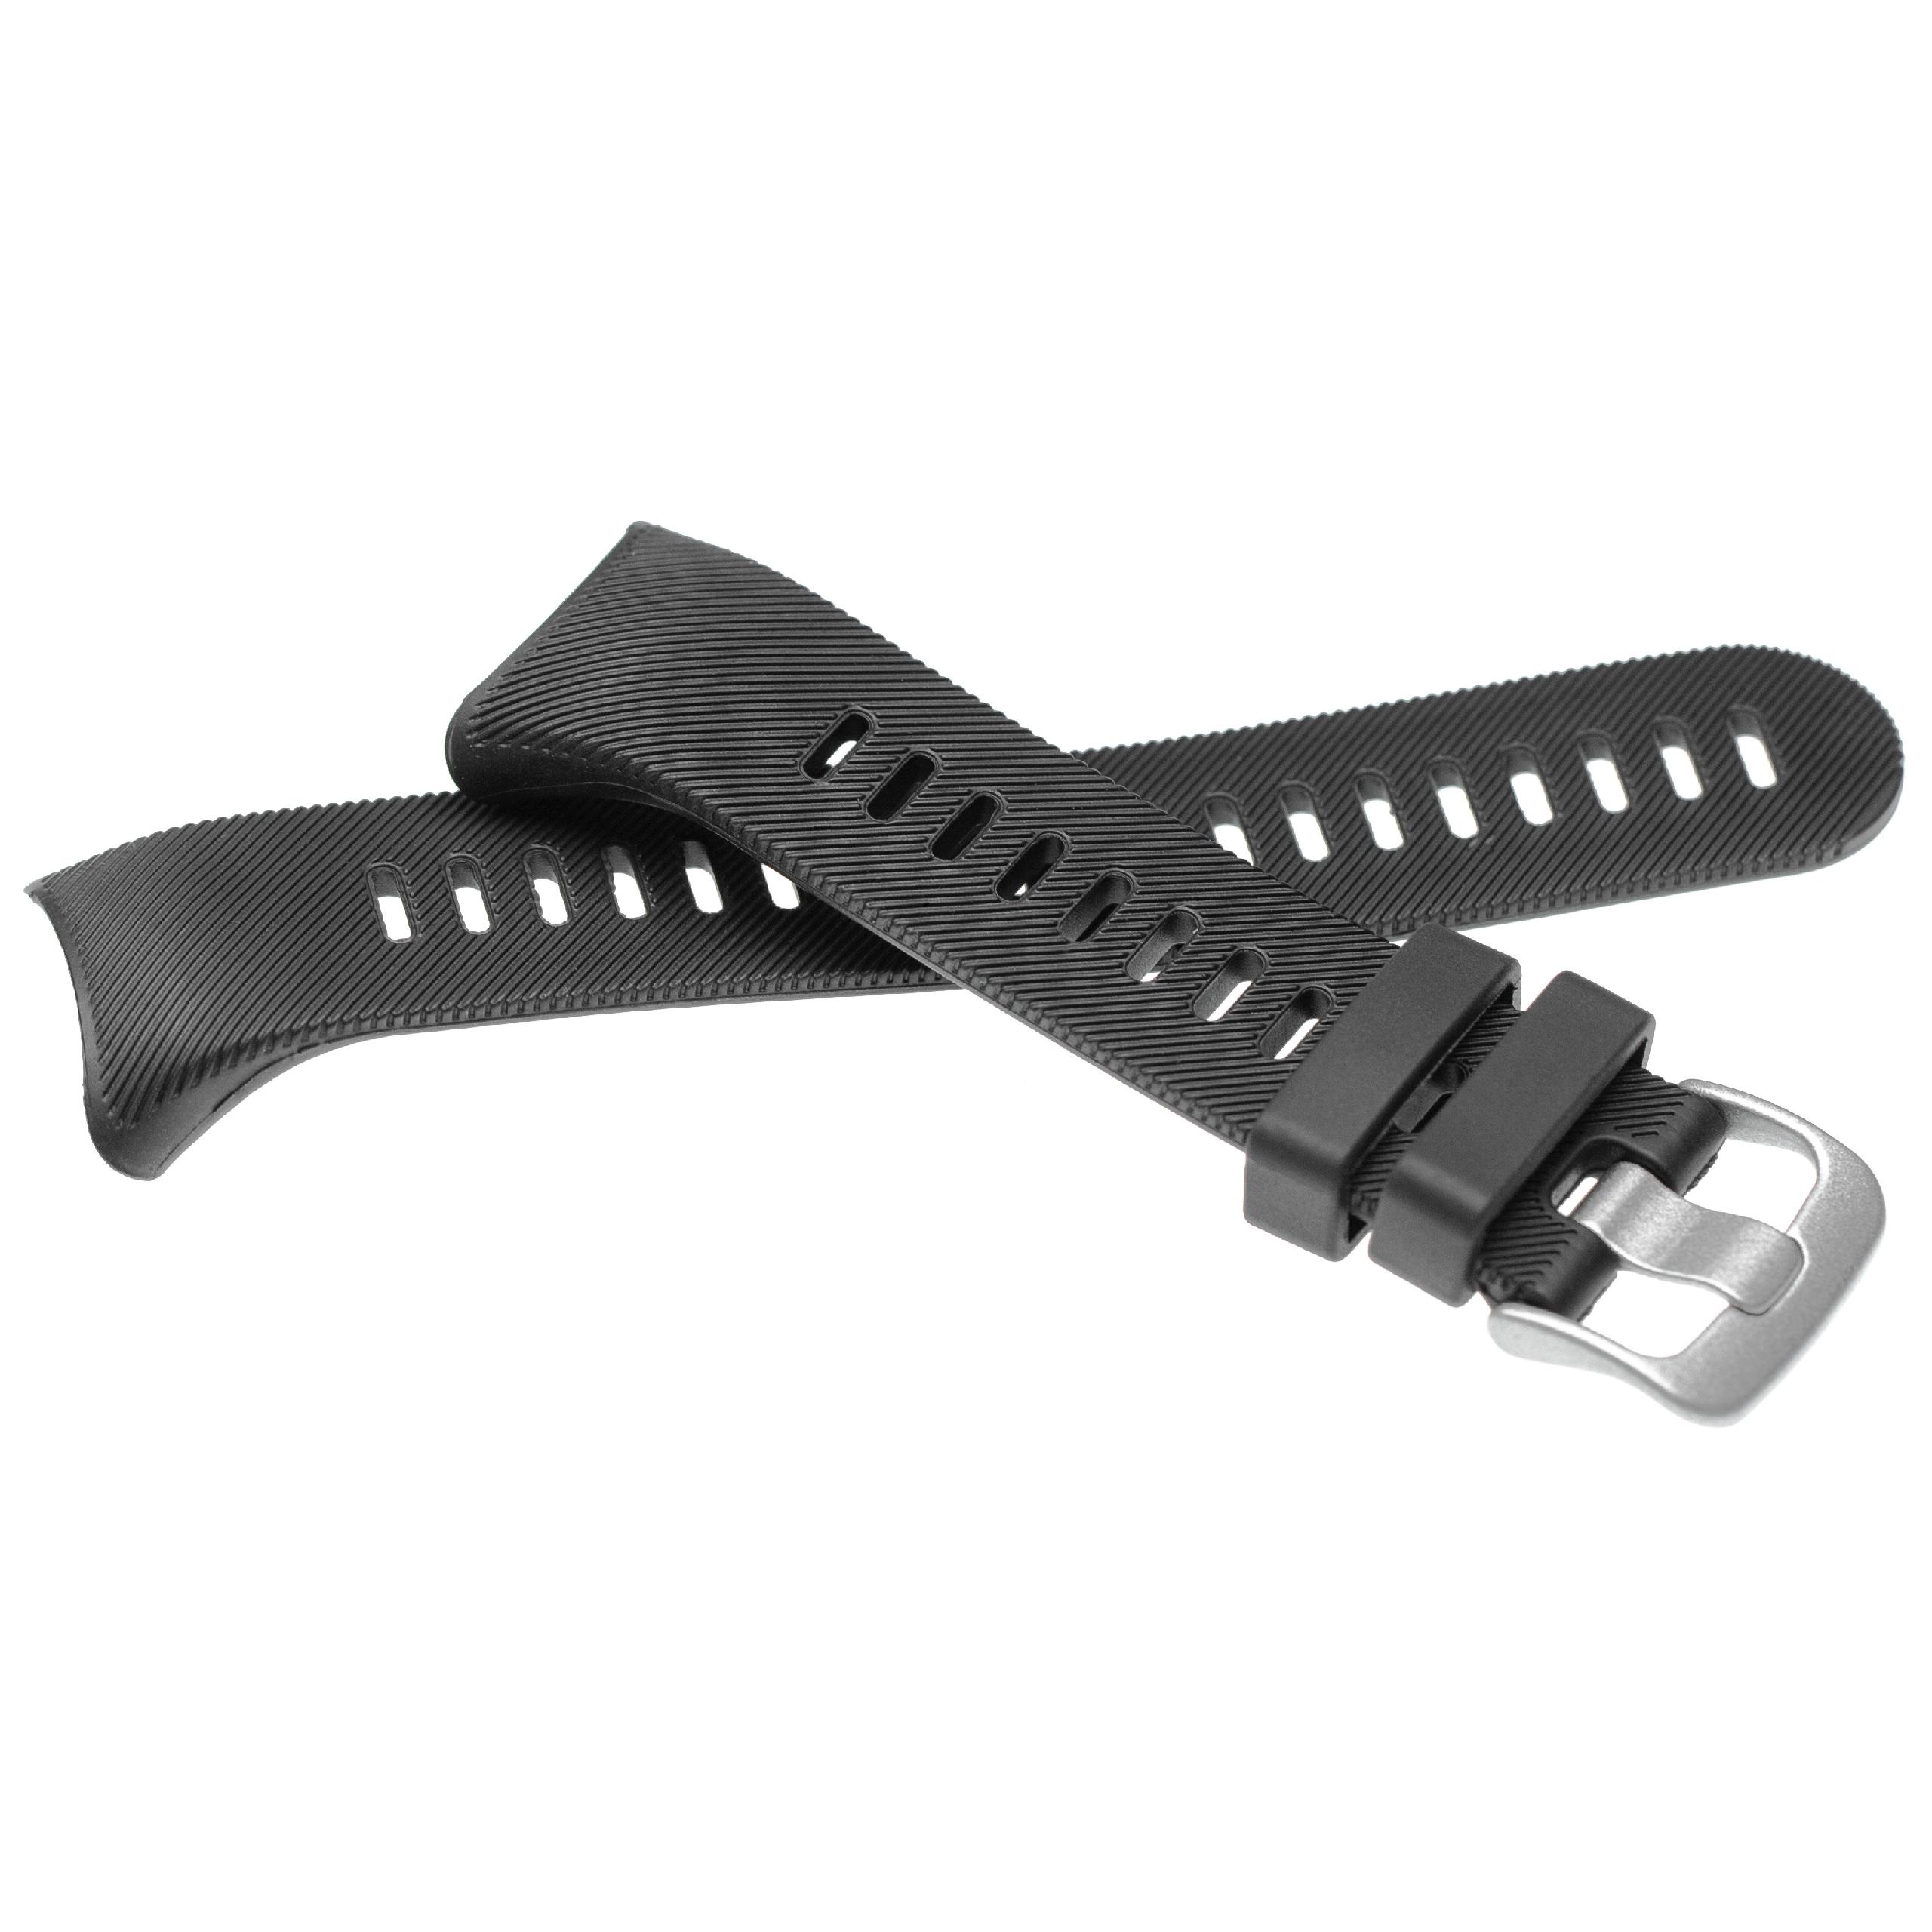 Armband für Garmin Forerunner Smartwatch - 11,6 + 9,1 cm lang, 25mm breit, Silikon, schwarz